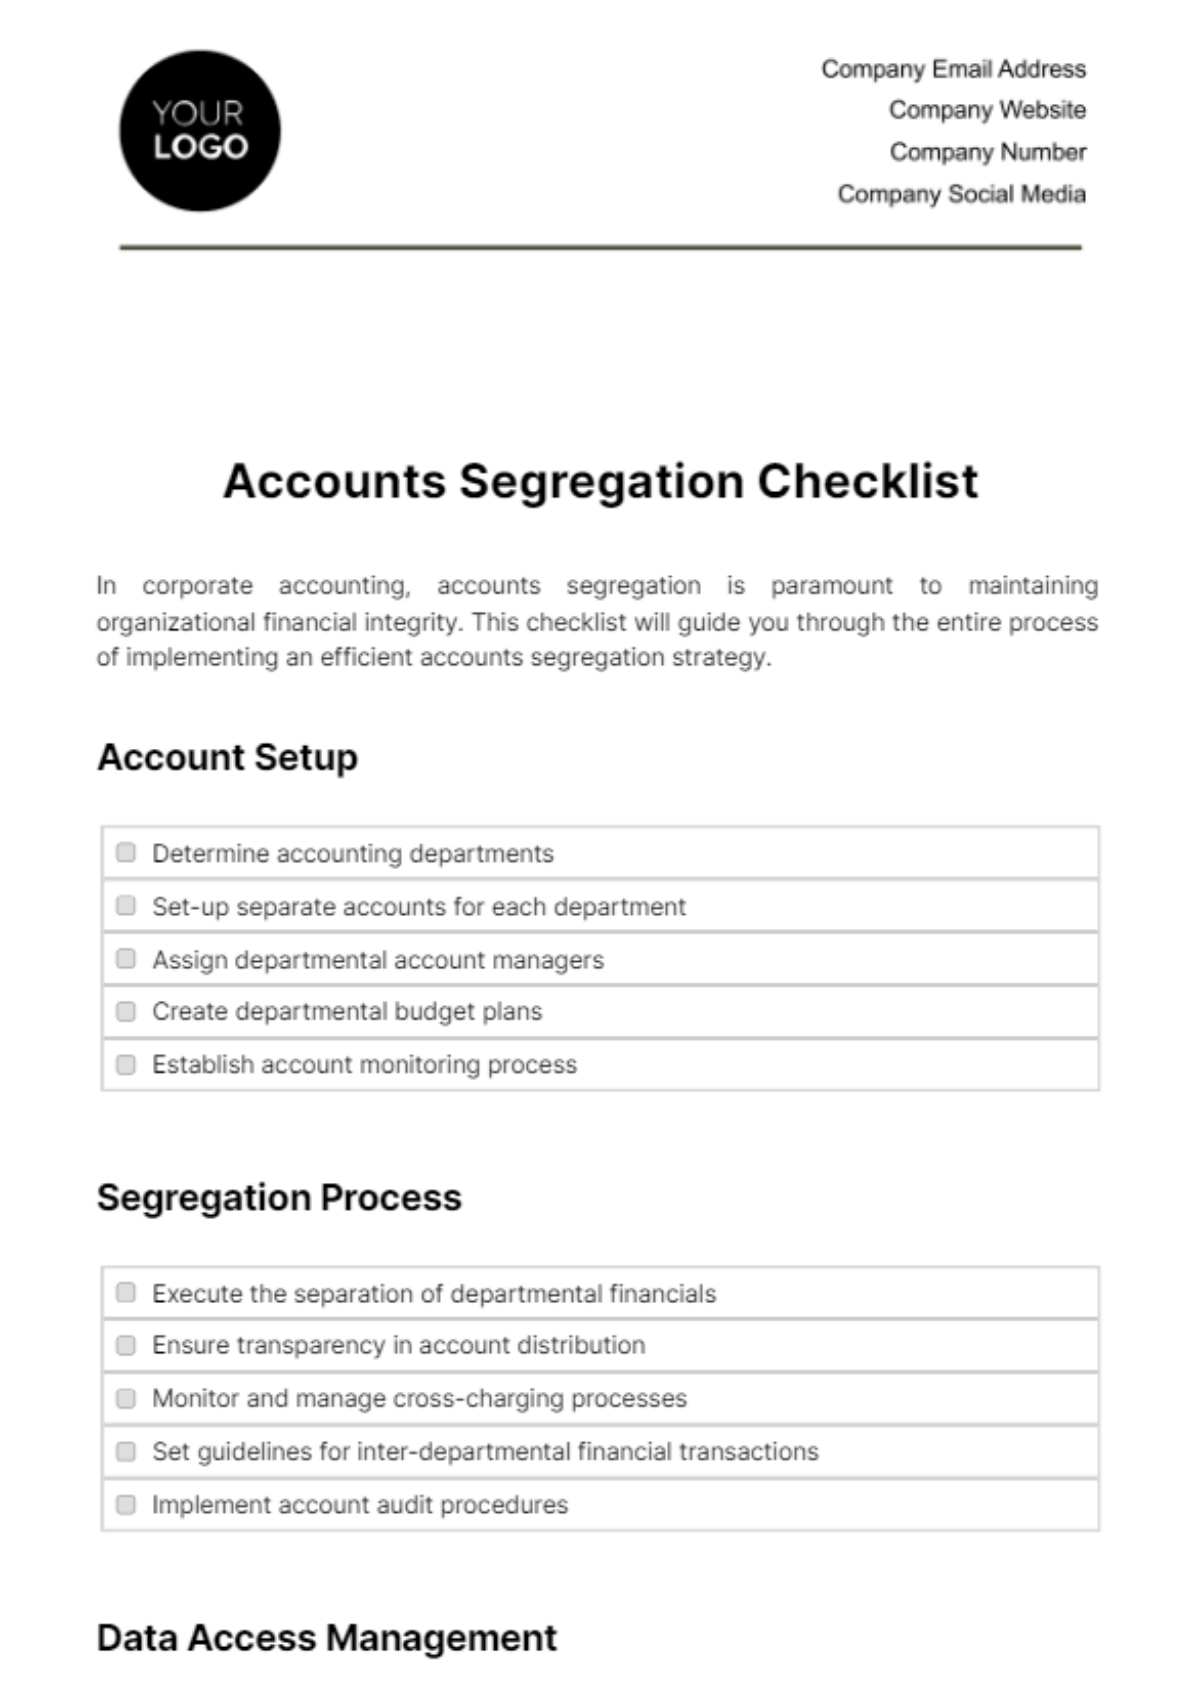 Free Accounts Segregation Checklist Template